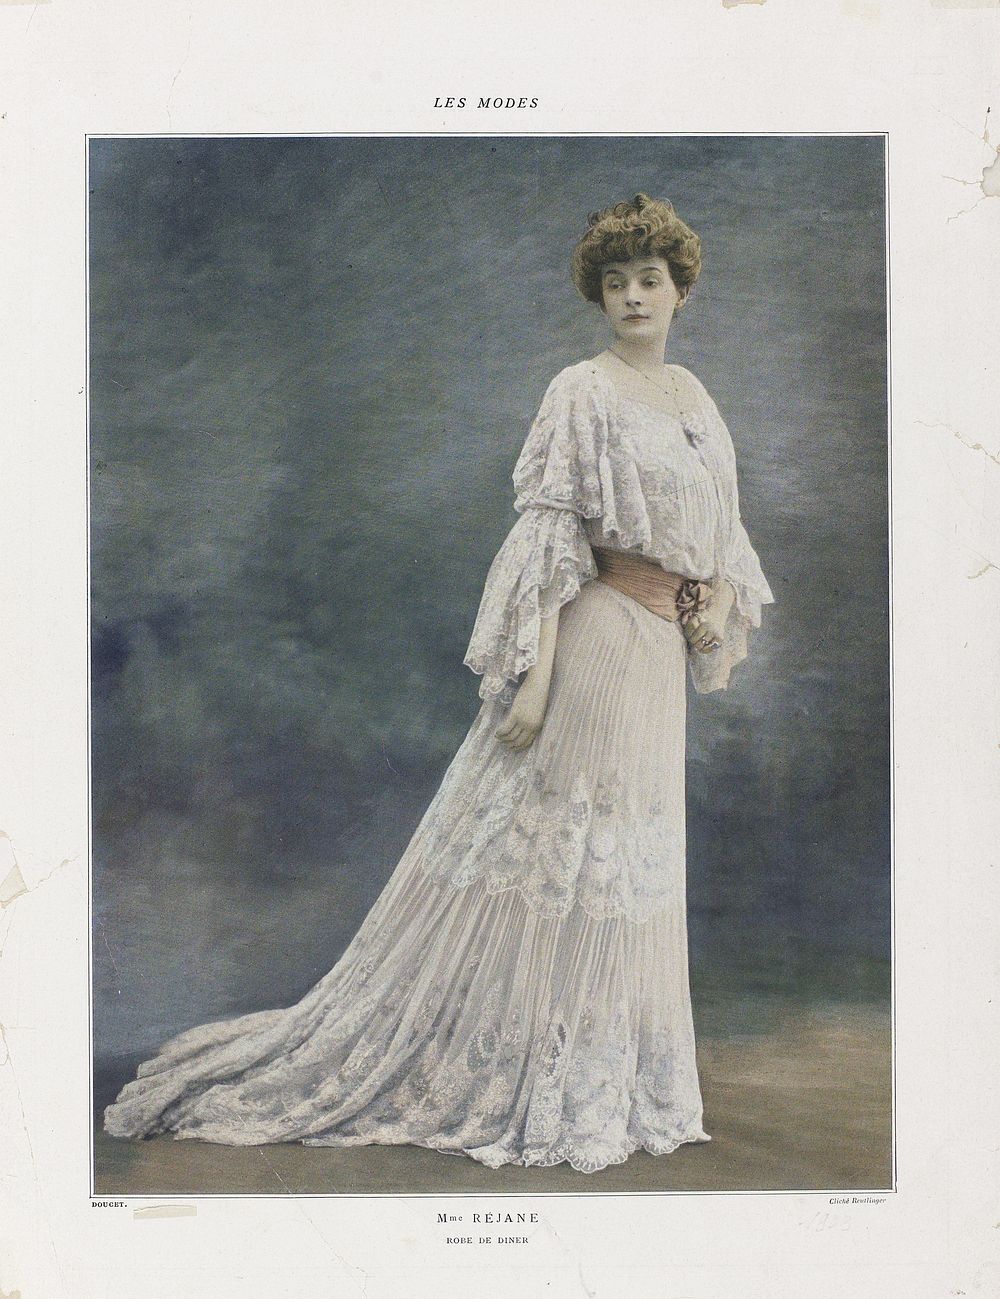 Les Modes, 1903 : Mme Réjane / ROBE DE DINER (1903) by Léopold Reutlinger and Jacques Doucet